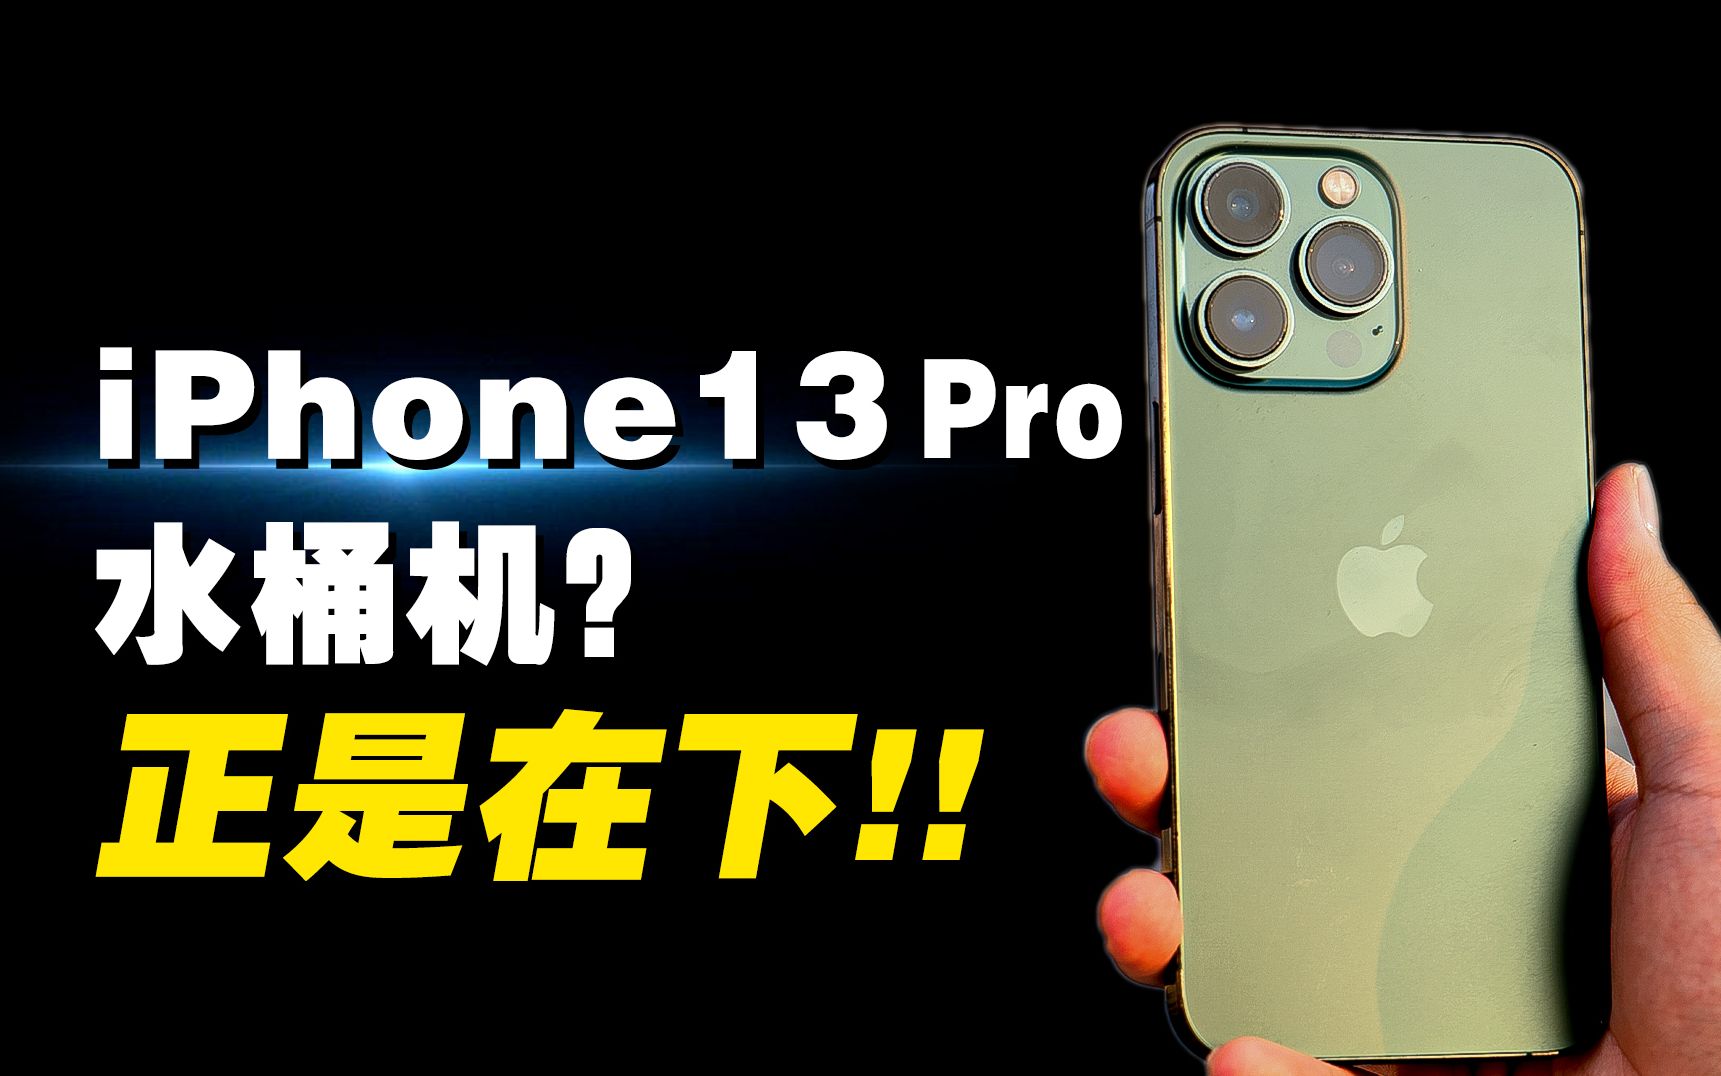 14出来买13—— iPhone13 Pro 现在还香吗？